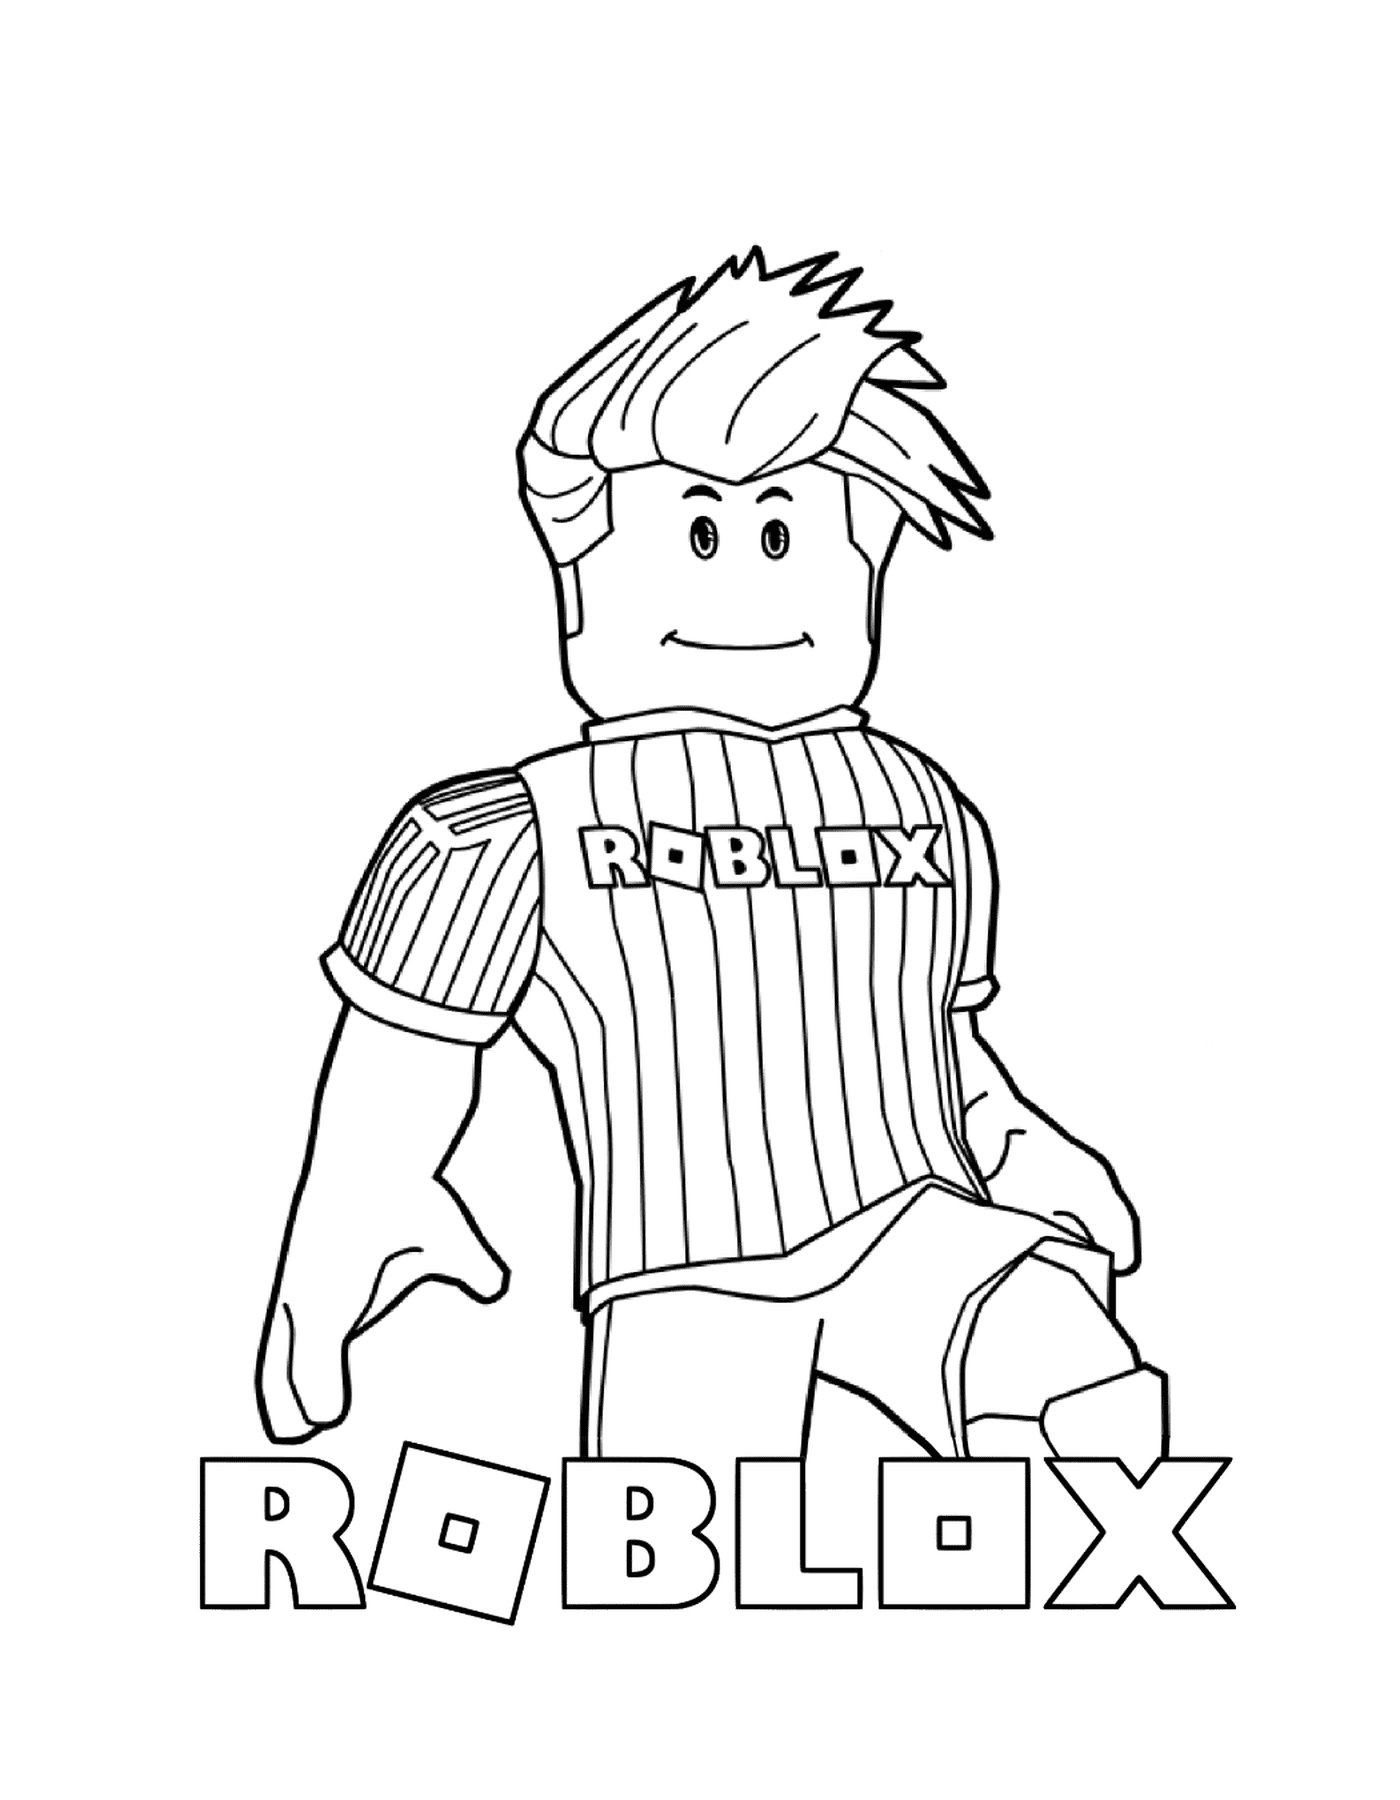  Roblox gosta de futebol 